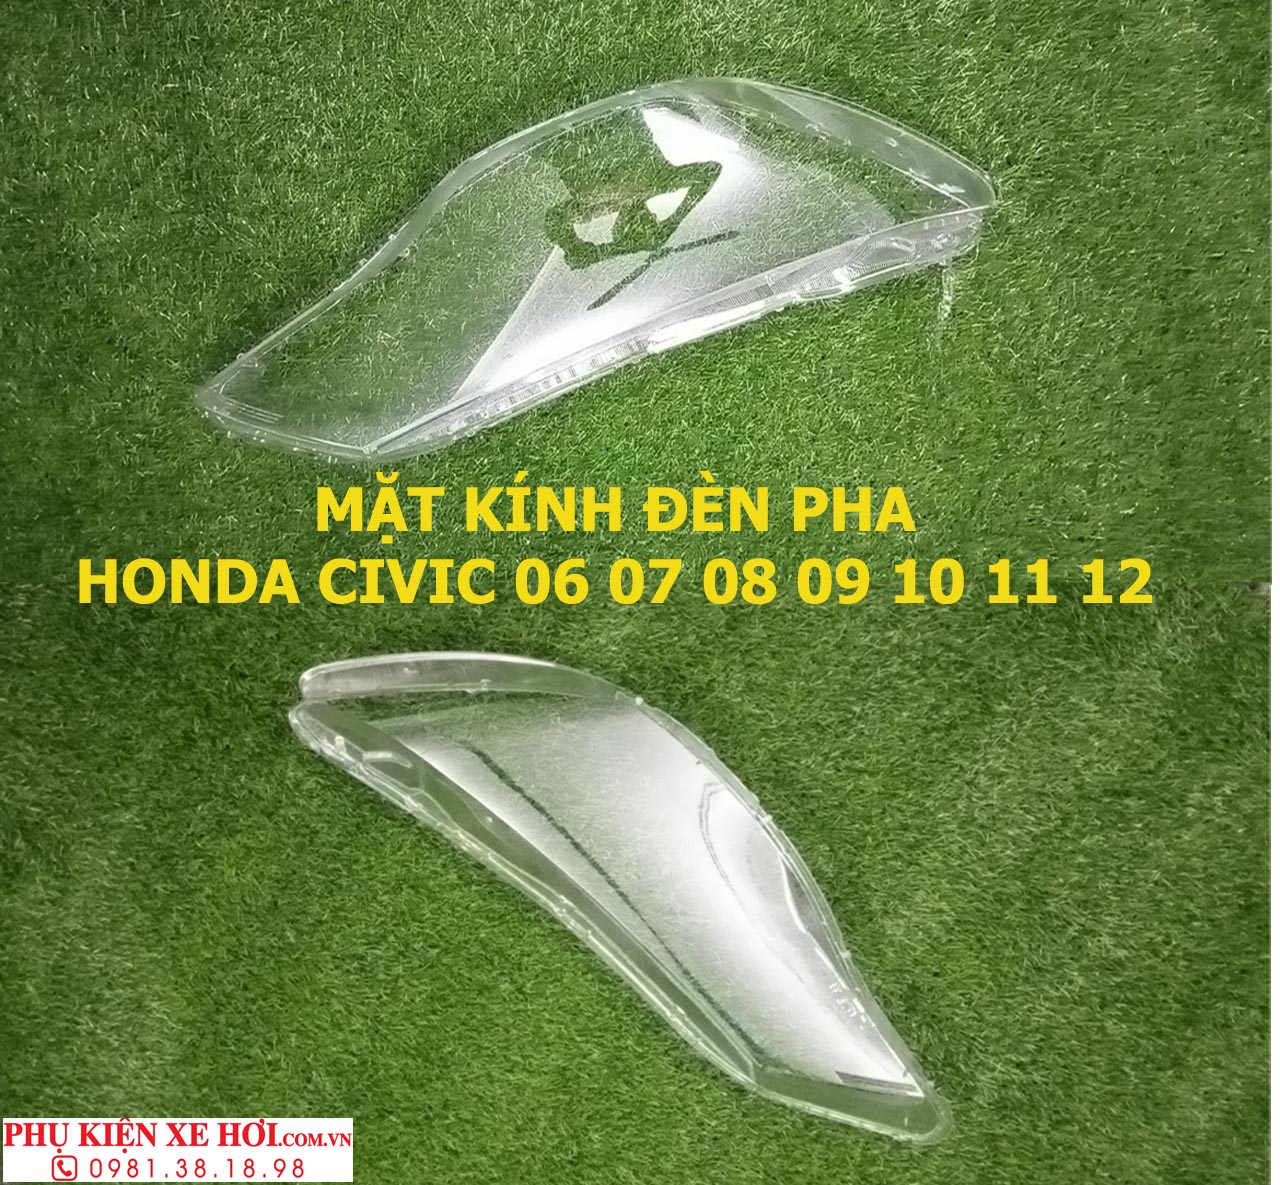 Mặt kính đèn pha Honda Civic, Mặt đèn pha Honda Civic, kính đèn pha Honda Civic, thay Mặt kính đèn pha Honda Civic, thay kính đèn pha Honda Civic